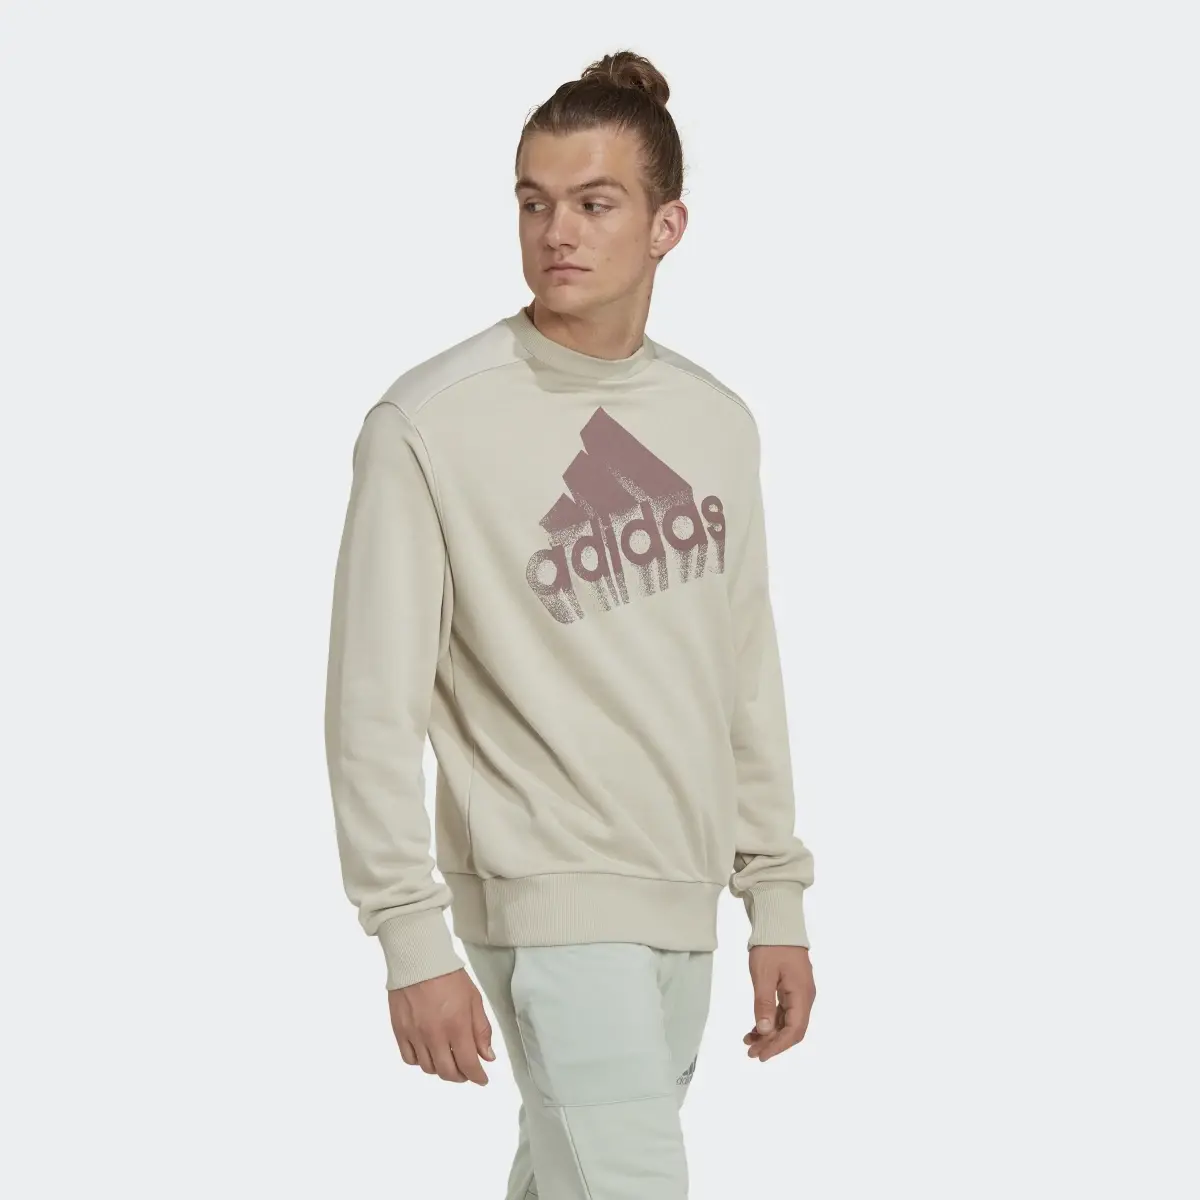 Adidas Essentials Brand Love French Terry Sweatshirt – Genderneutral. 3